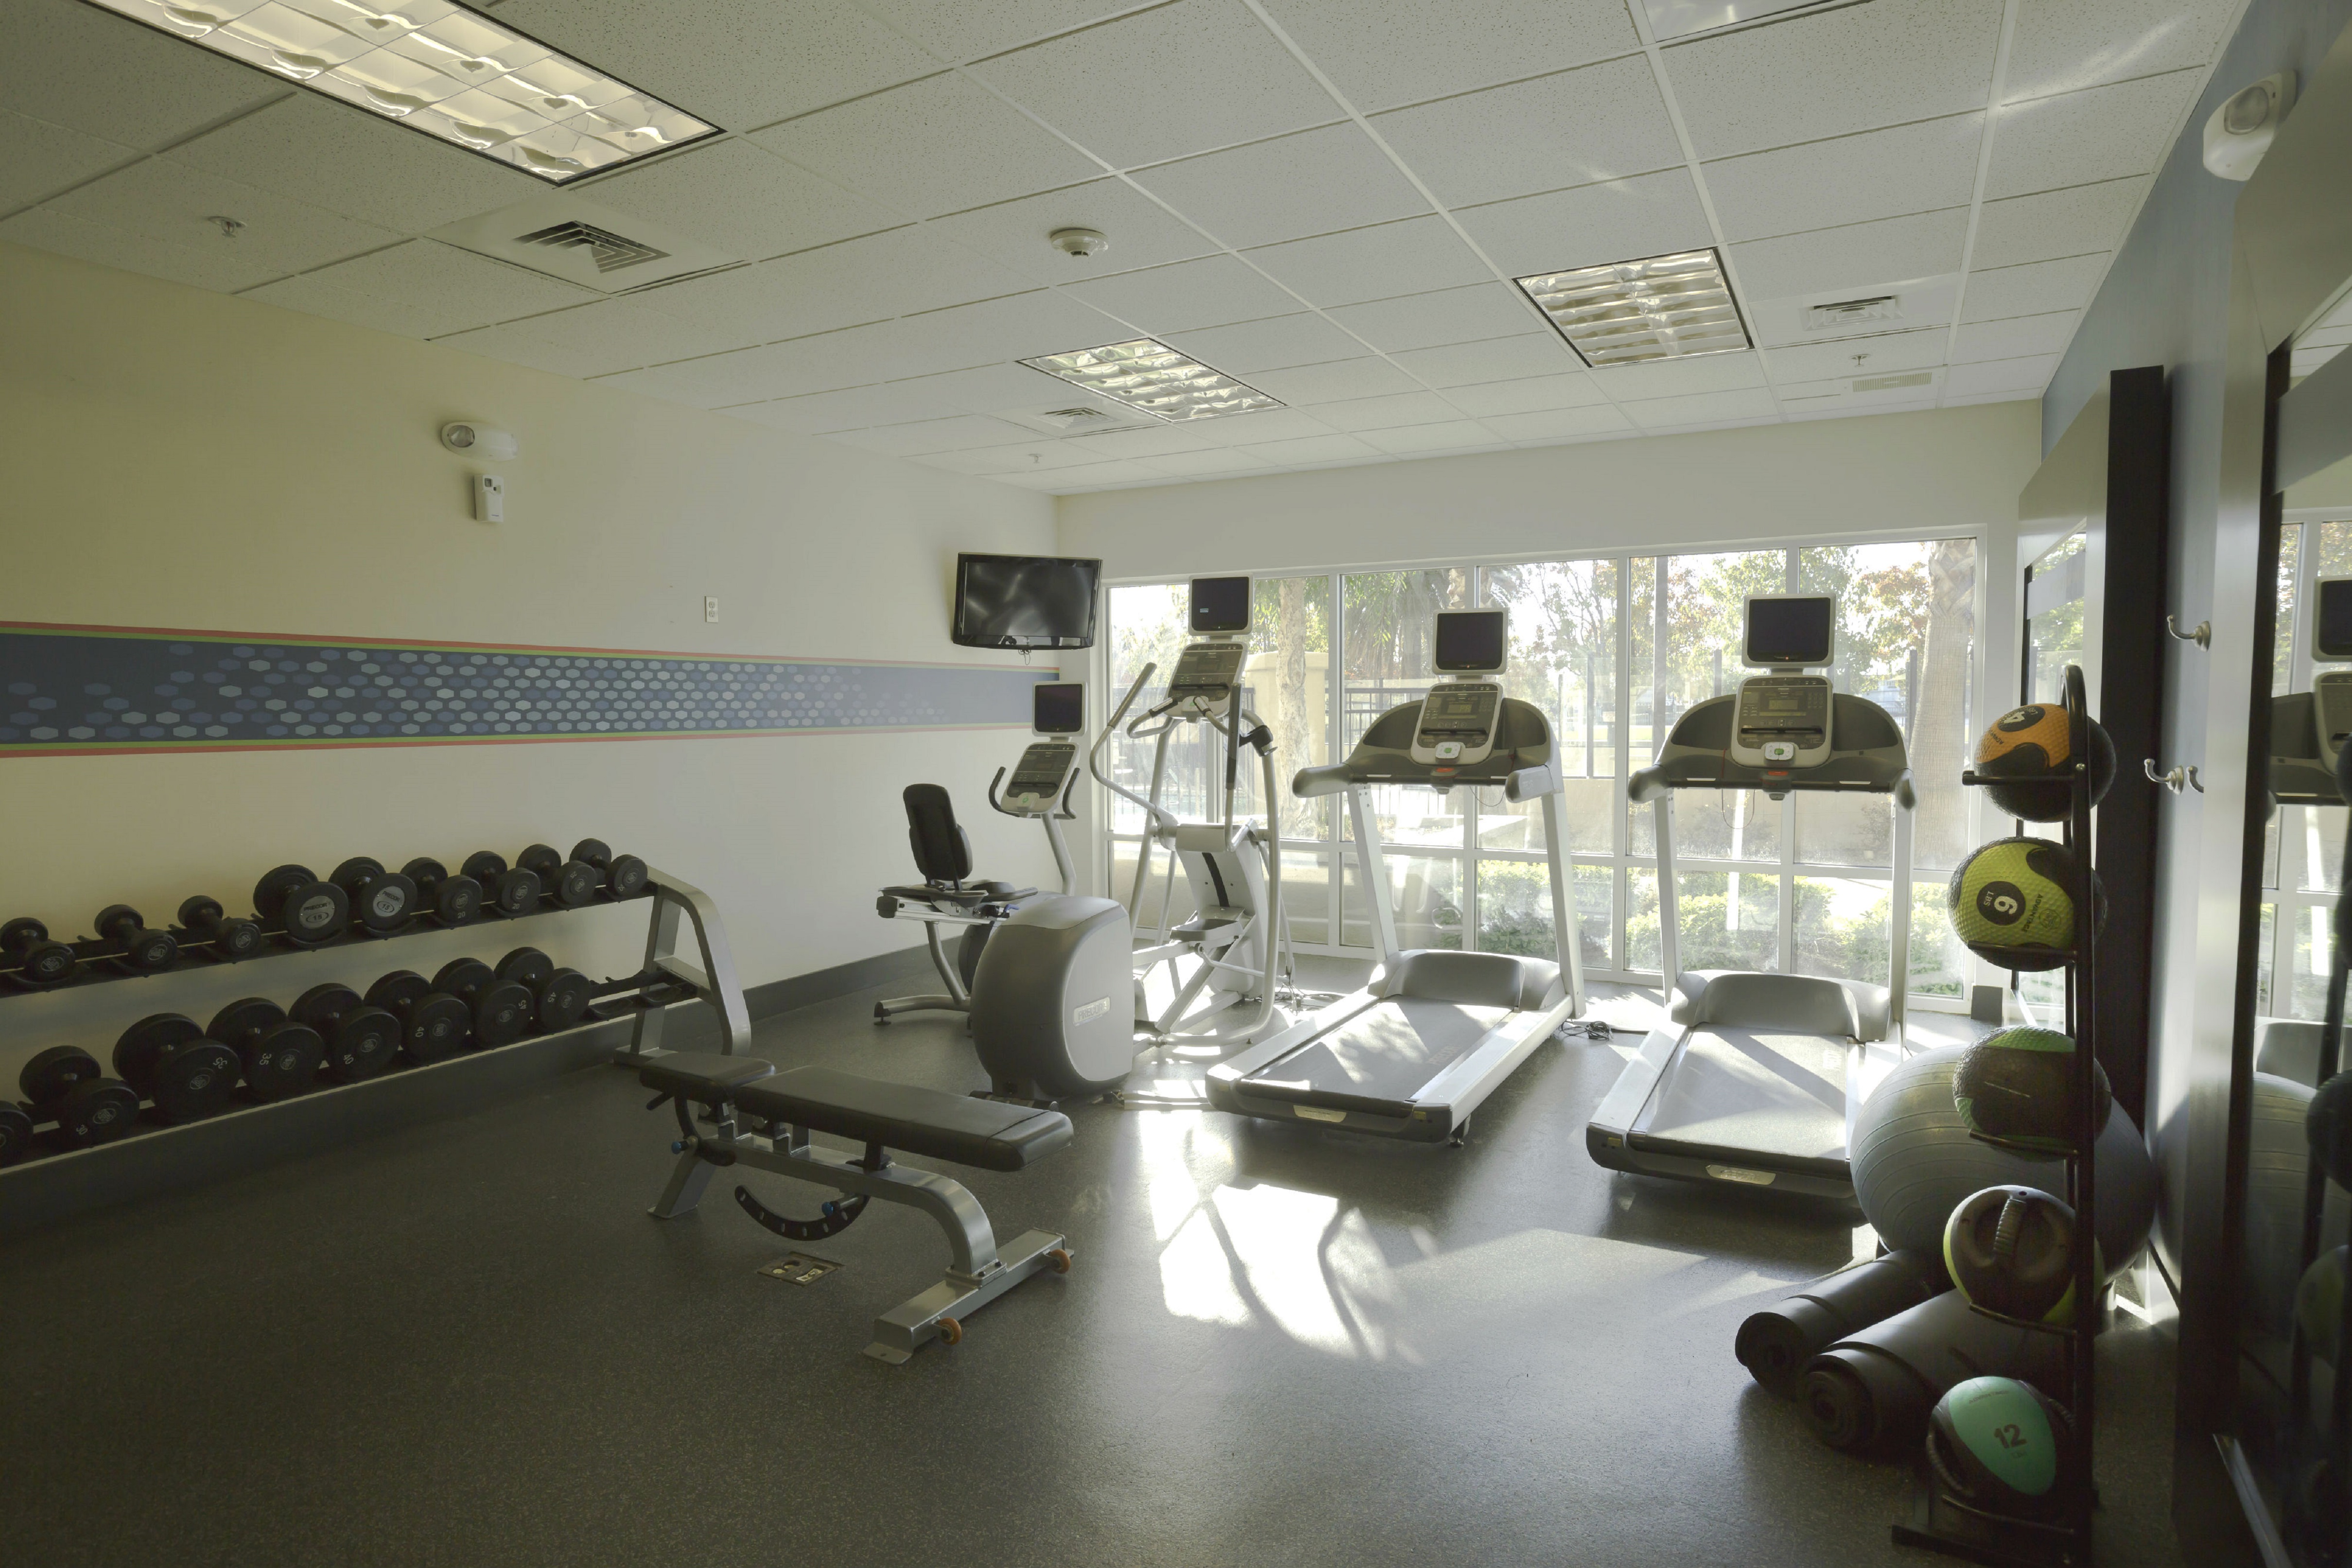 24-Hour Fitness Center